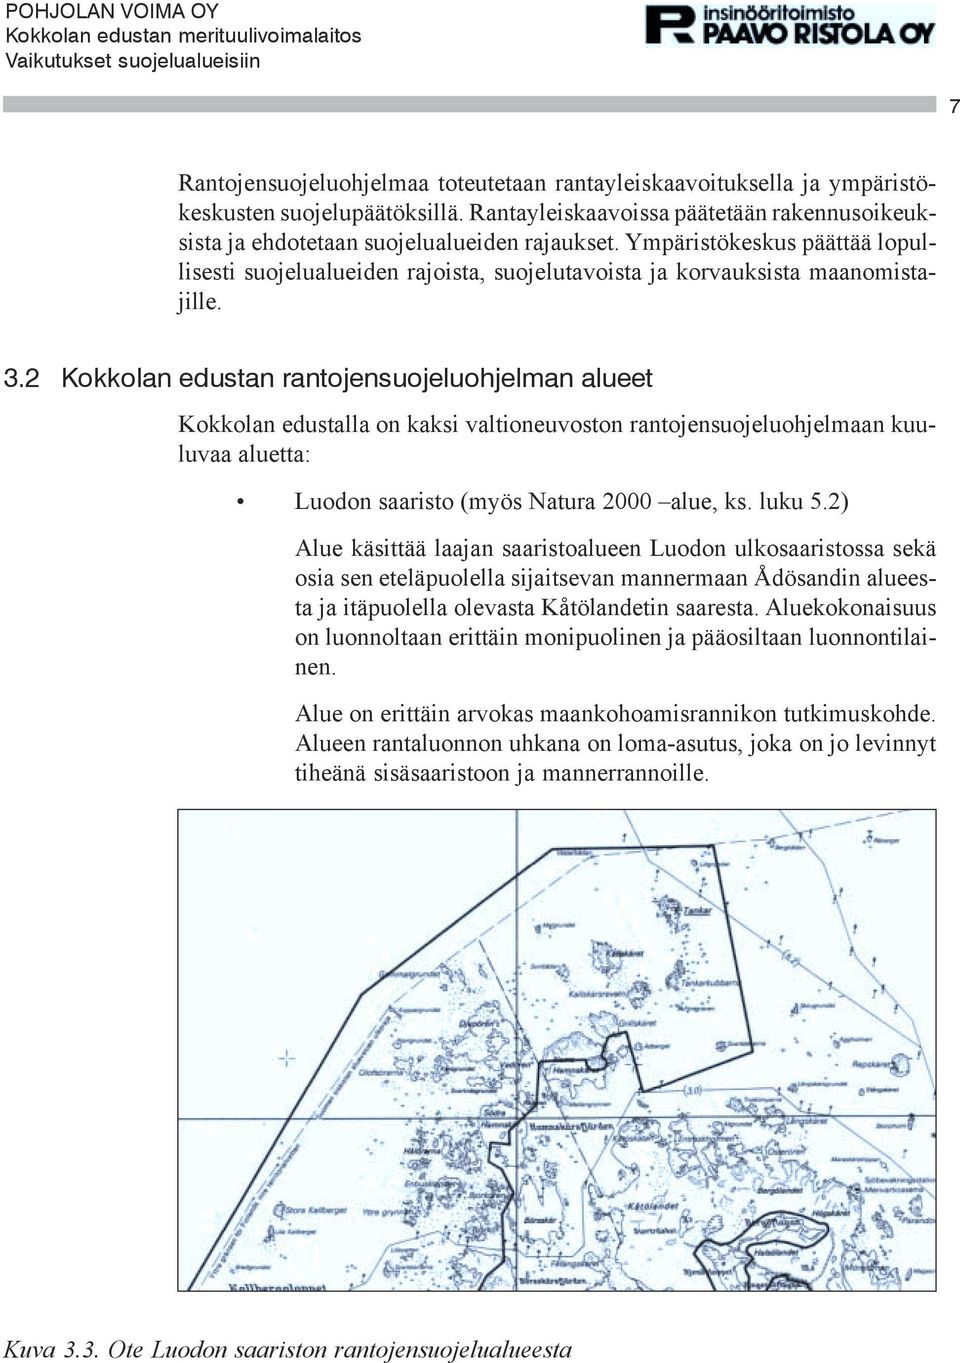 2 Kokkolan edustan rantojensuojeluohjelman alueet Kokkolan edustalla on kaksi valtioneuvoston rantojensuojeluohjelmaan kuuluvaa aluetta: Luodon saaristo (myös Natura 2000 alue, ks. luku 5.